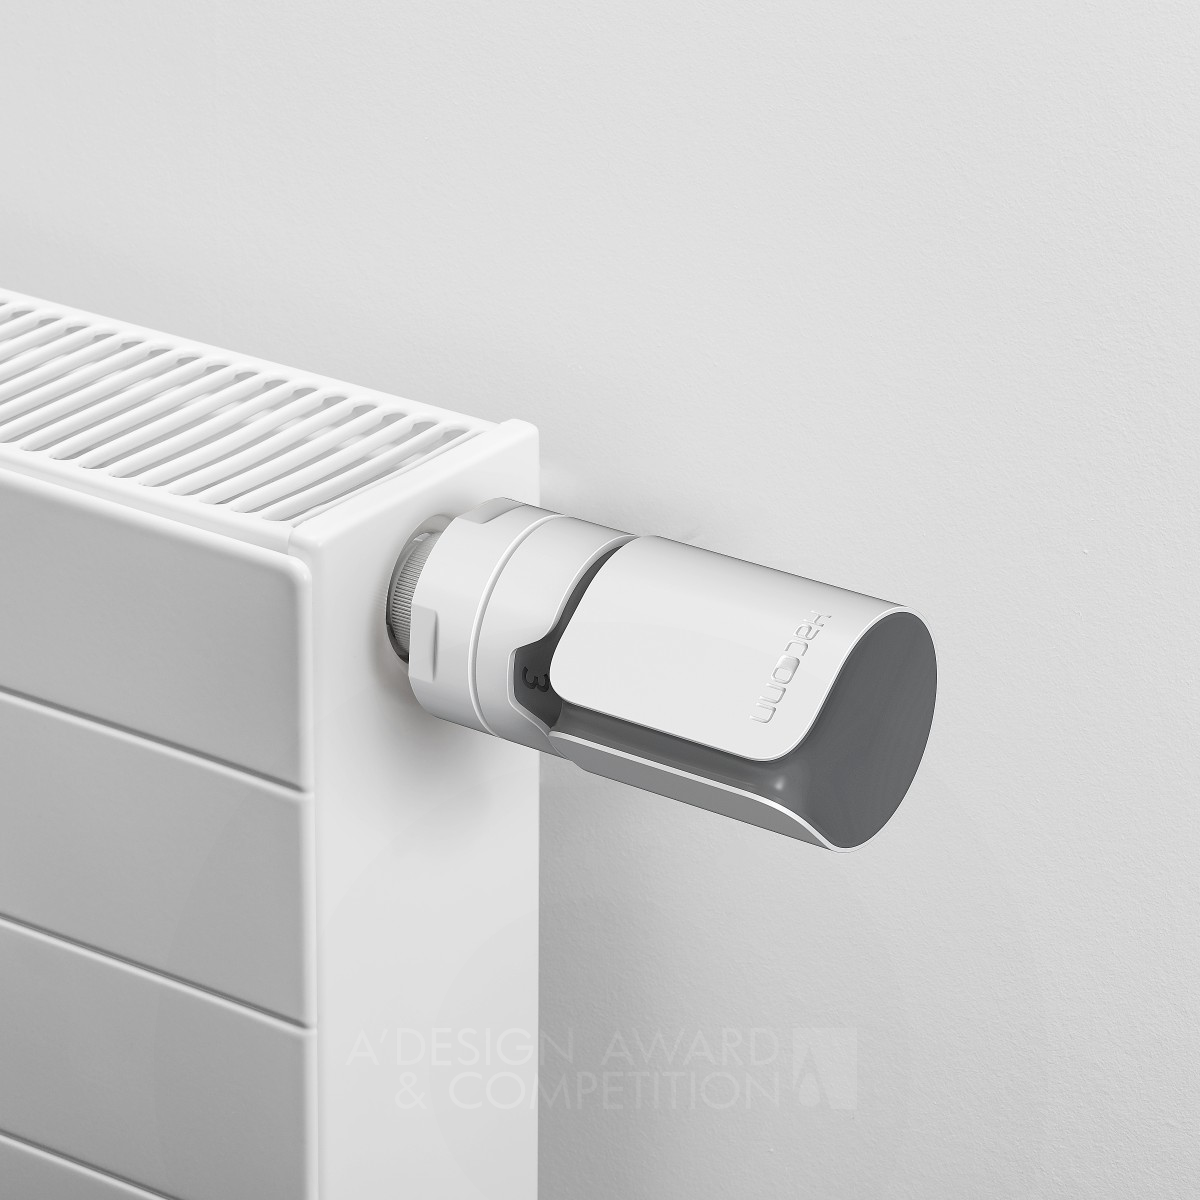 Haconn Radiator Thermostat: il termostato per radiatori che unisce design e funzionalità